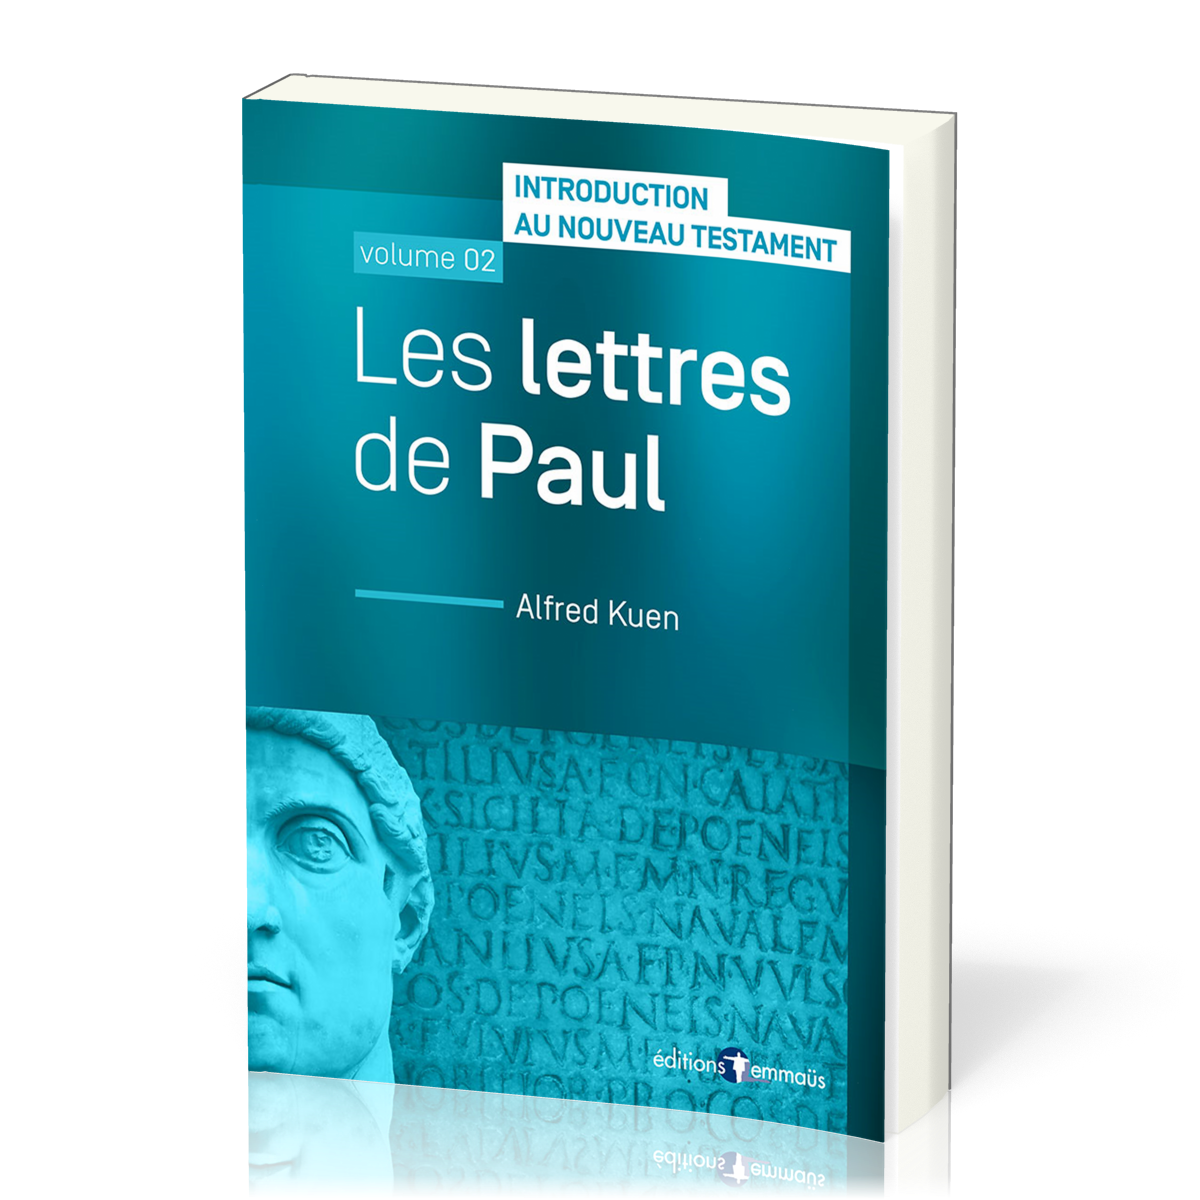 Lettres de Paul (Les) - Introduction au Nouveau Testament, vol. 2